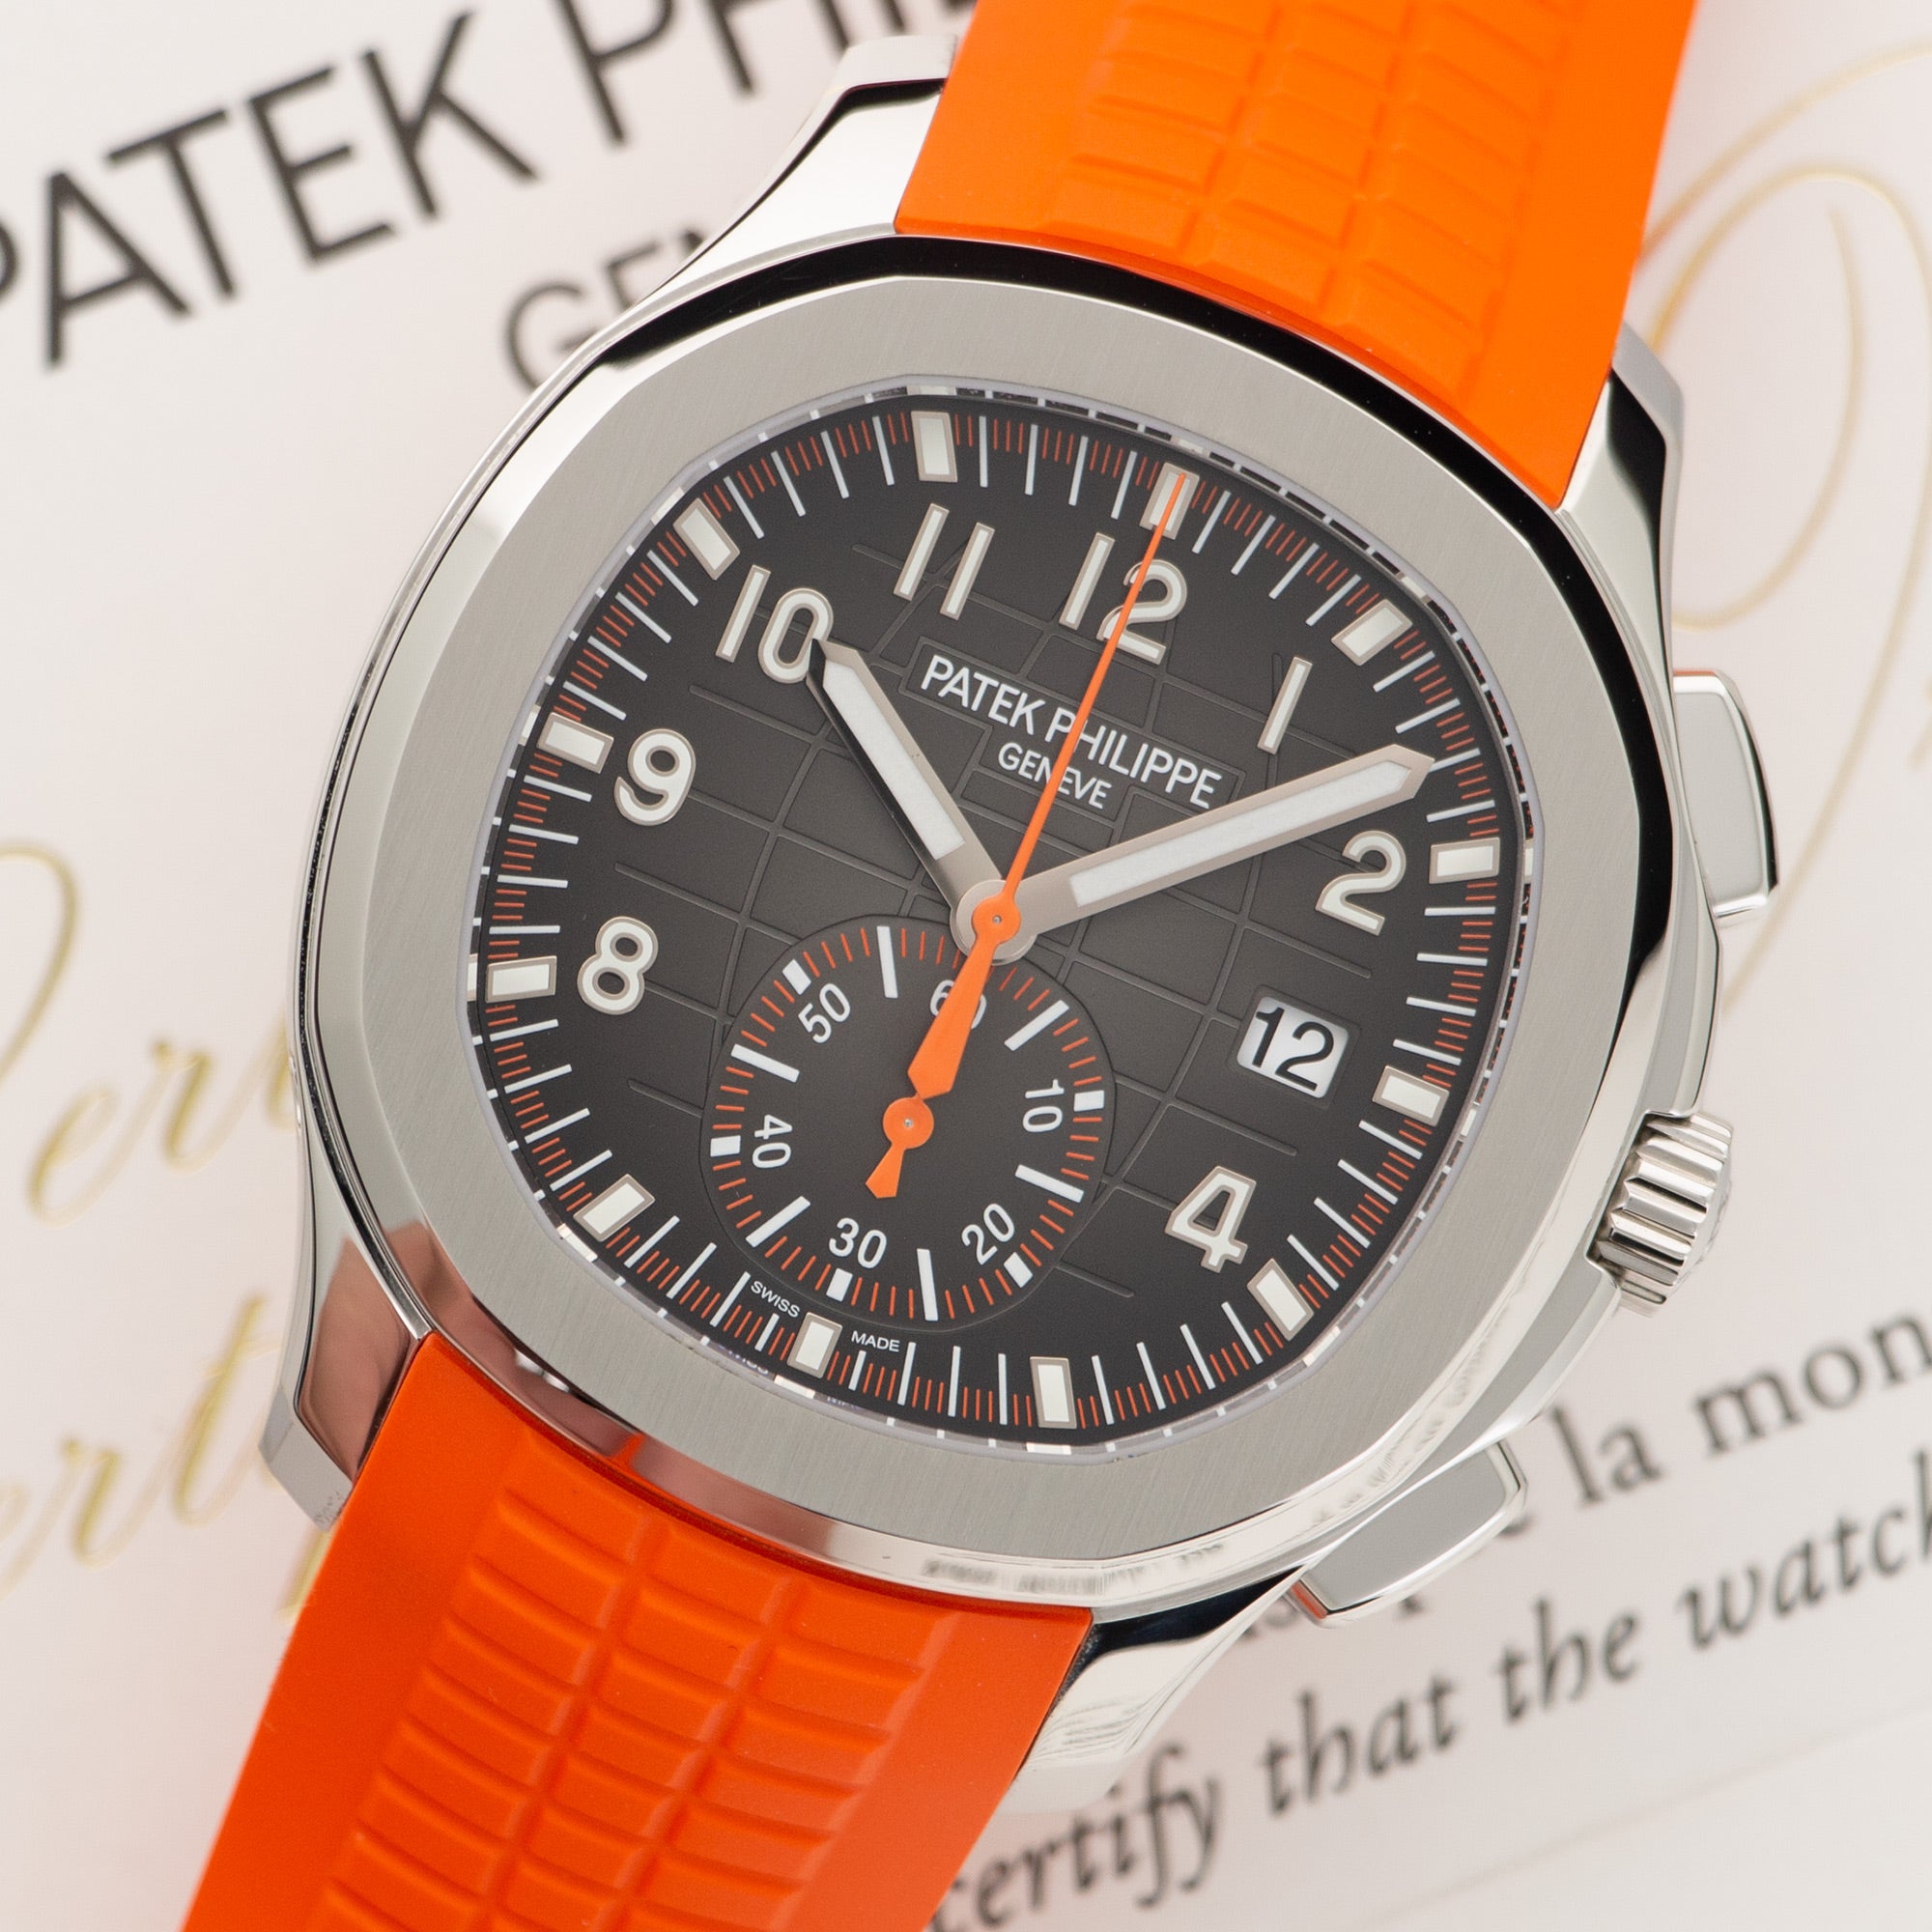 Patek Philippe - Patek Philippe Aquanaut Chronograph Watch Ref. 5968 - The Keystone Watches